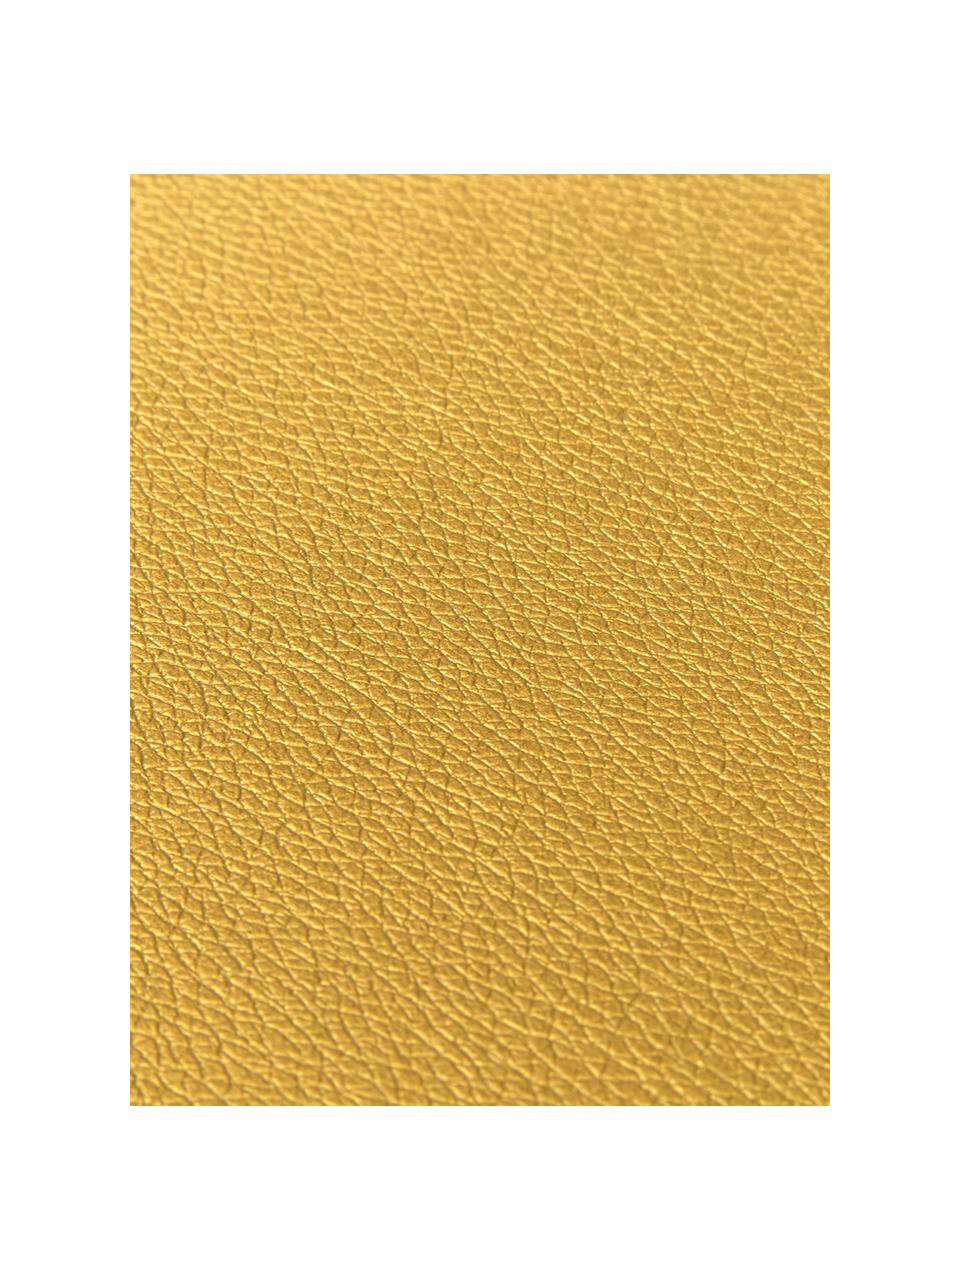 Podkładka ze sztucznej skóry Pik, 2 szt., Tworzywo sztuczne (PVC), Odcienie złotego, S 33 x D 46 cm